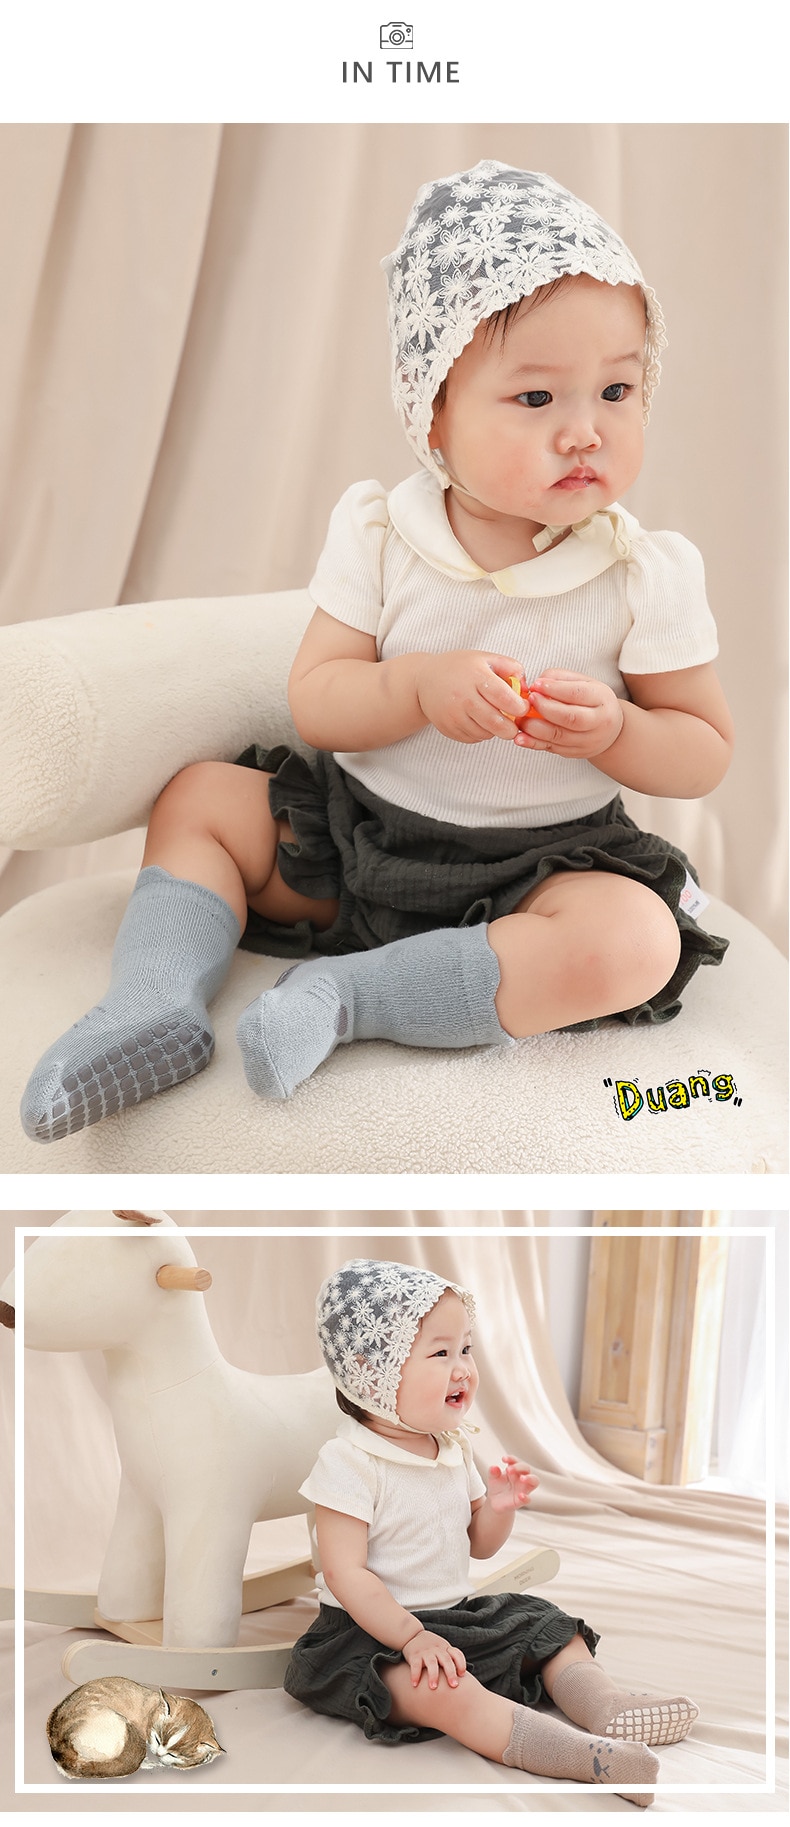 Calzini per bambini autunno inverno calzini per bambini calzini per bambini antiscivolo in cotone pettinato calzini in cotone per neonati